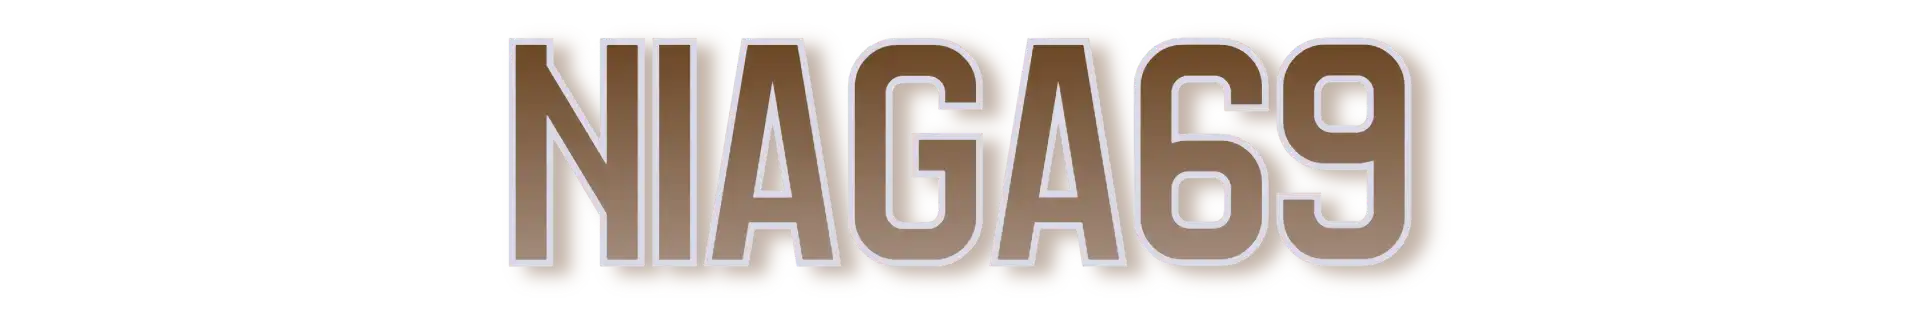 Niaga69